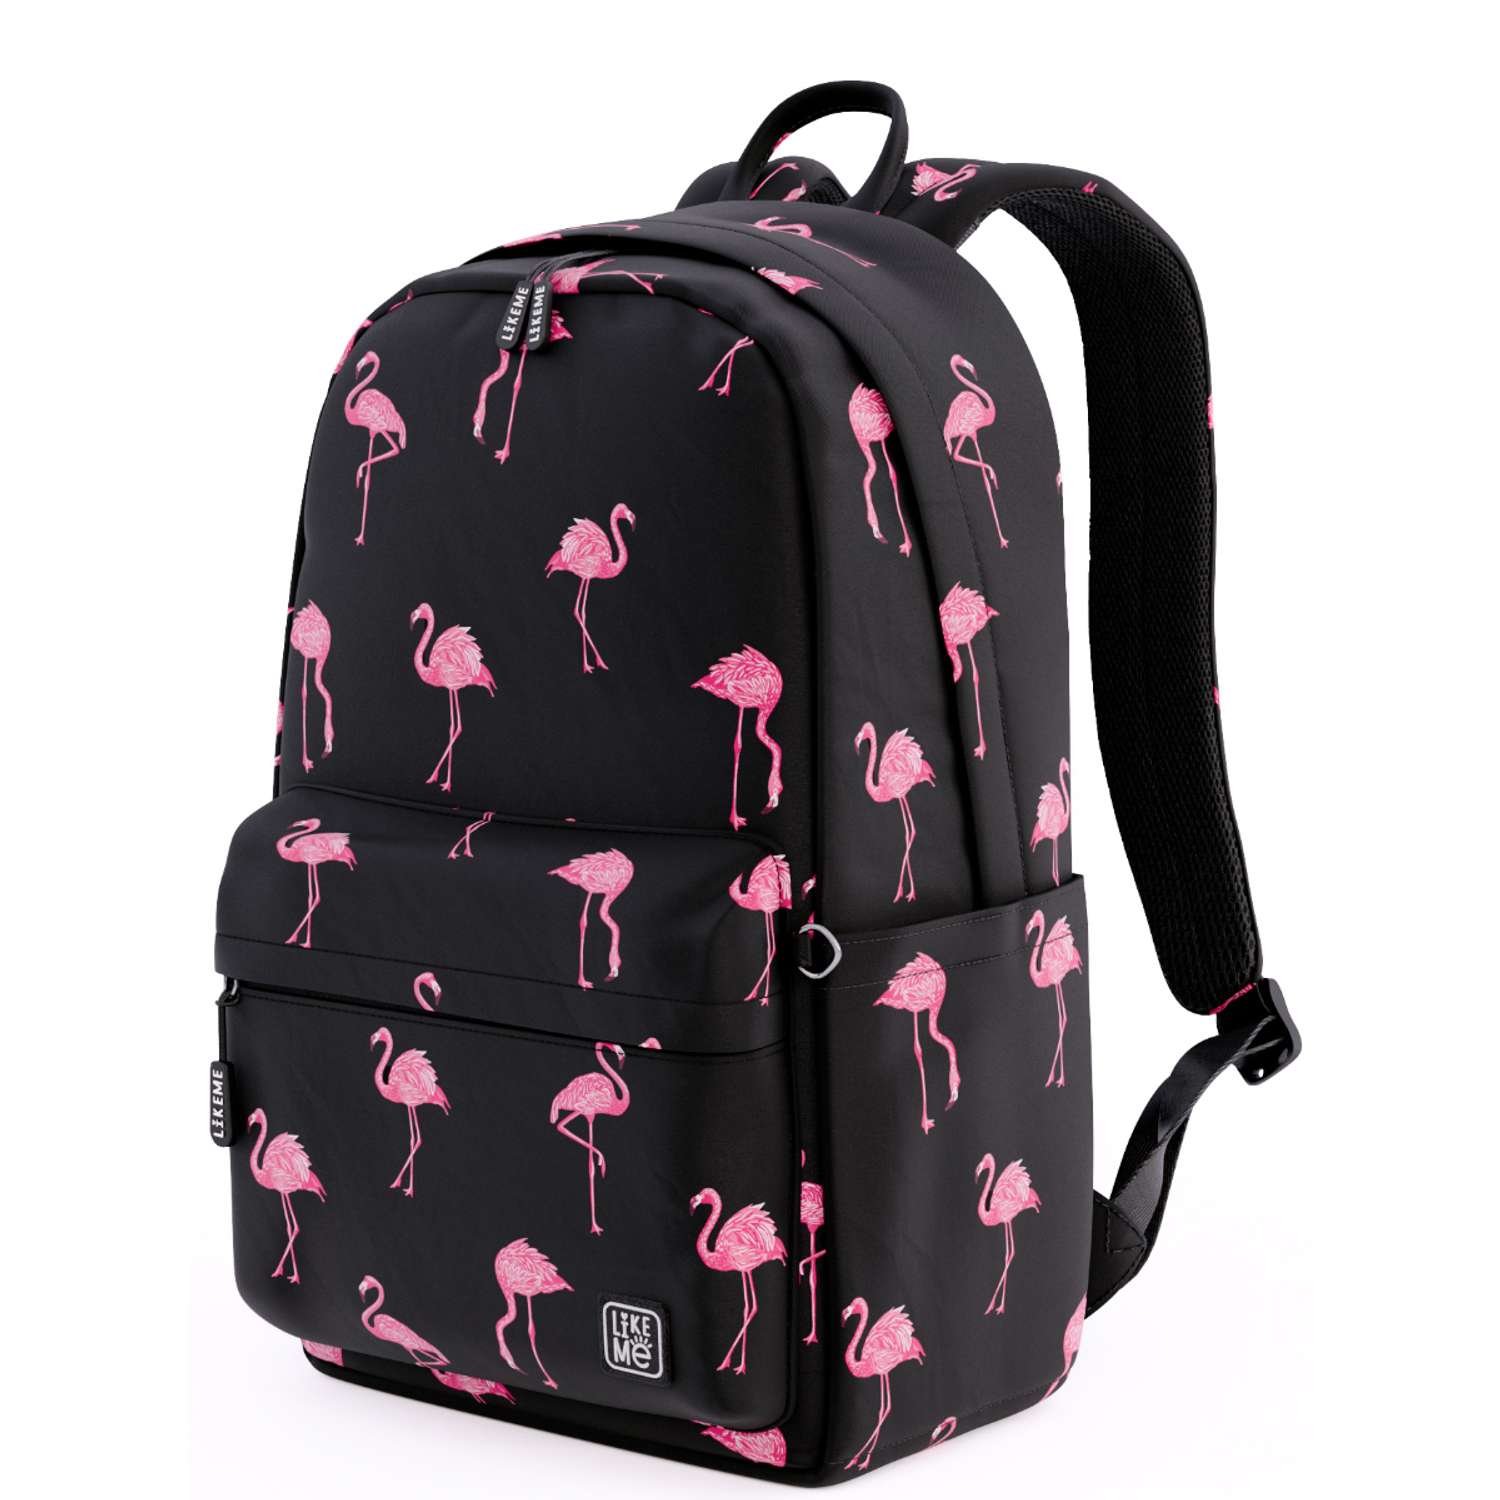 Черный рюкзак для девочек. Рюкзак Steiner Фламинго. Рюкзак just Backpack Фламинго. Рюкзак like.me с Фламинго. Рюкзак Фламинго Lilko.